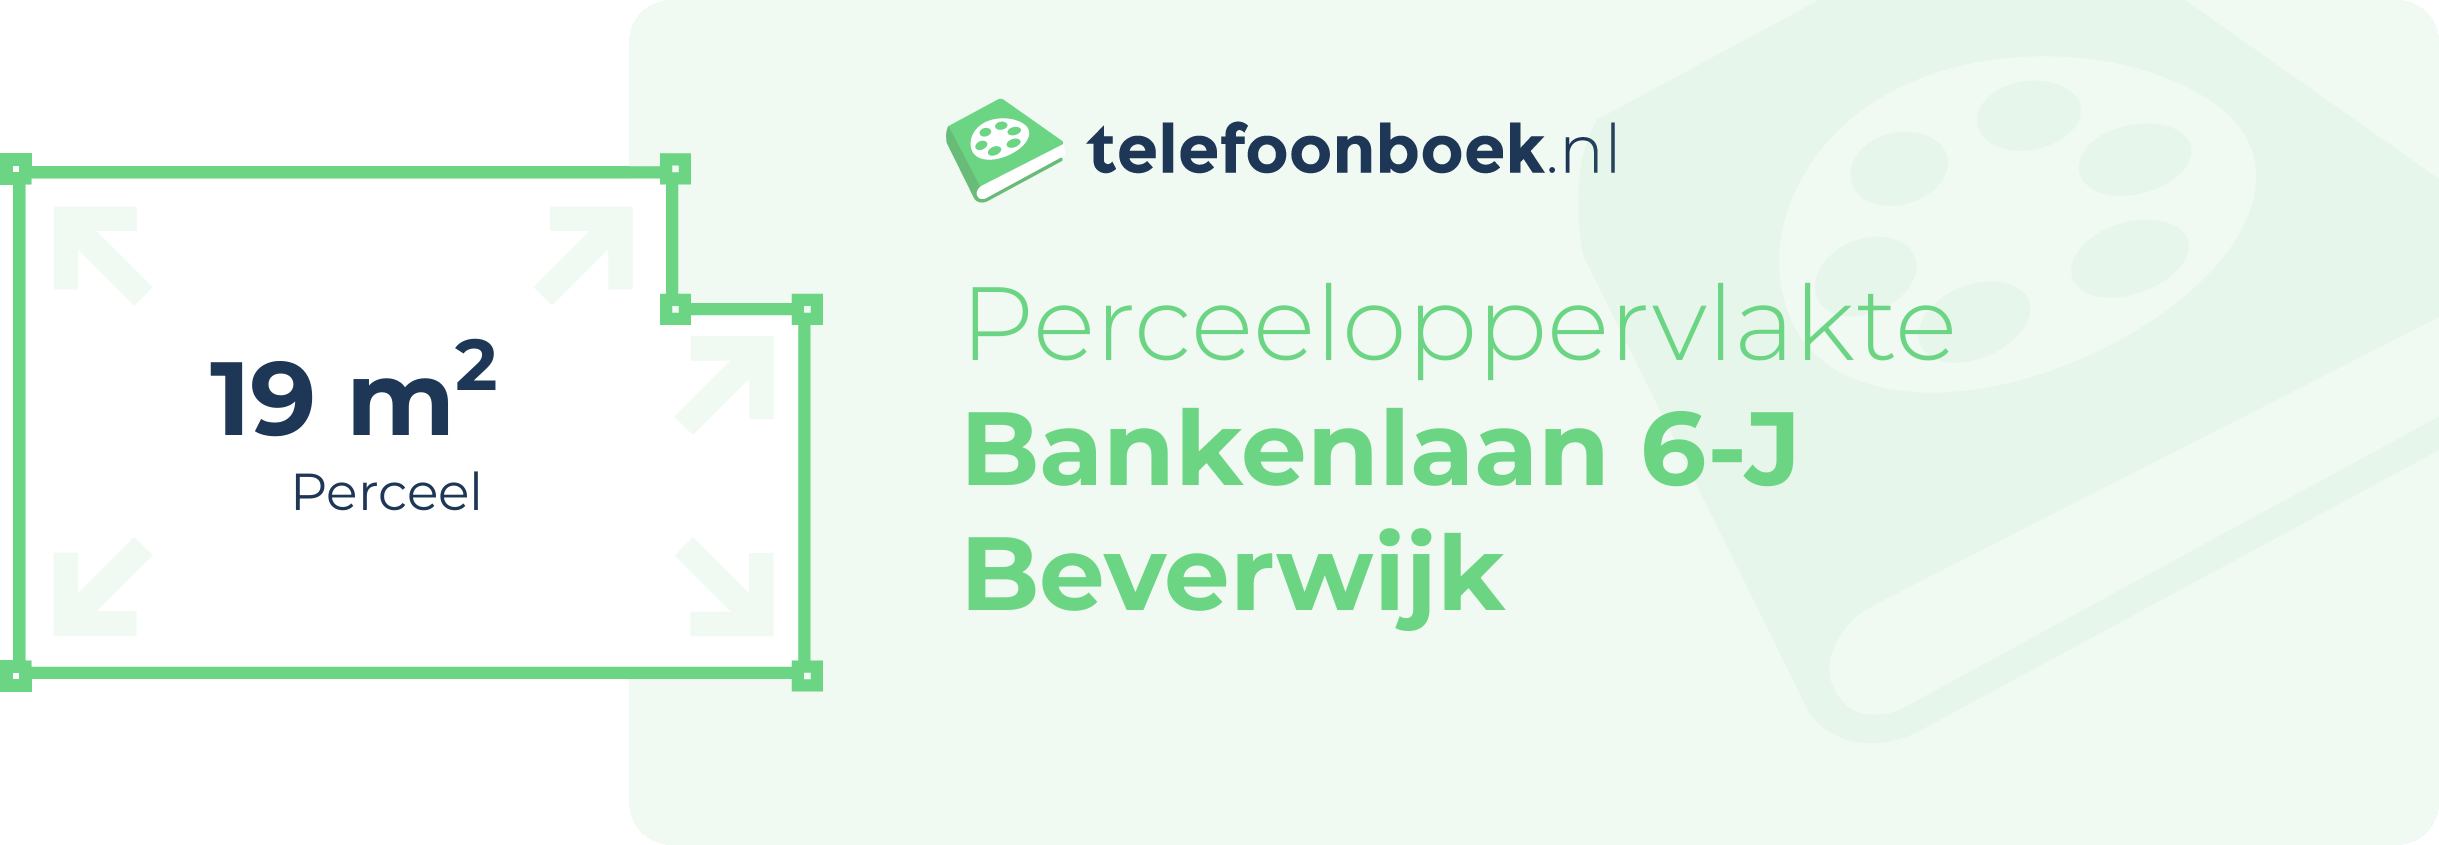 Perceeloppervlakte Bankenlaan 6-J Beverwijk